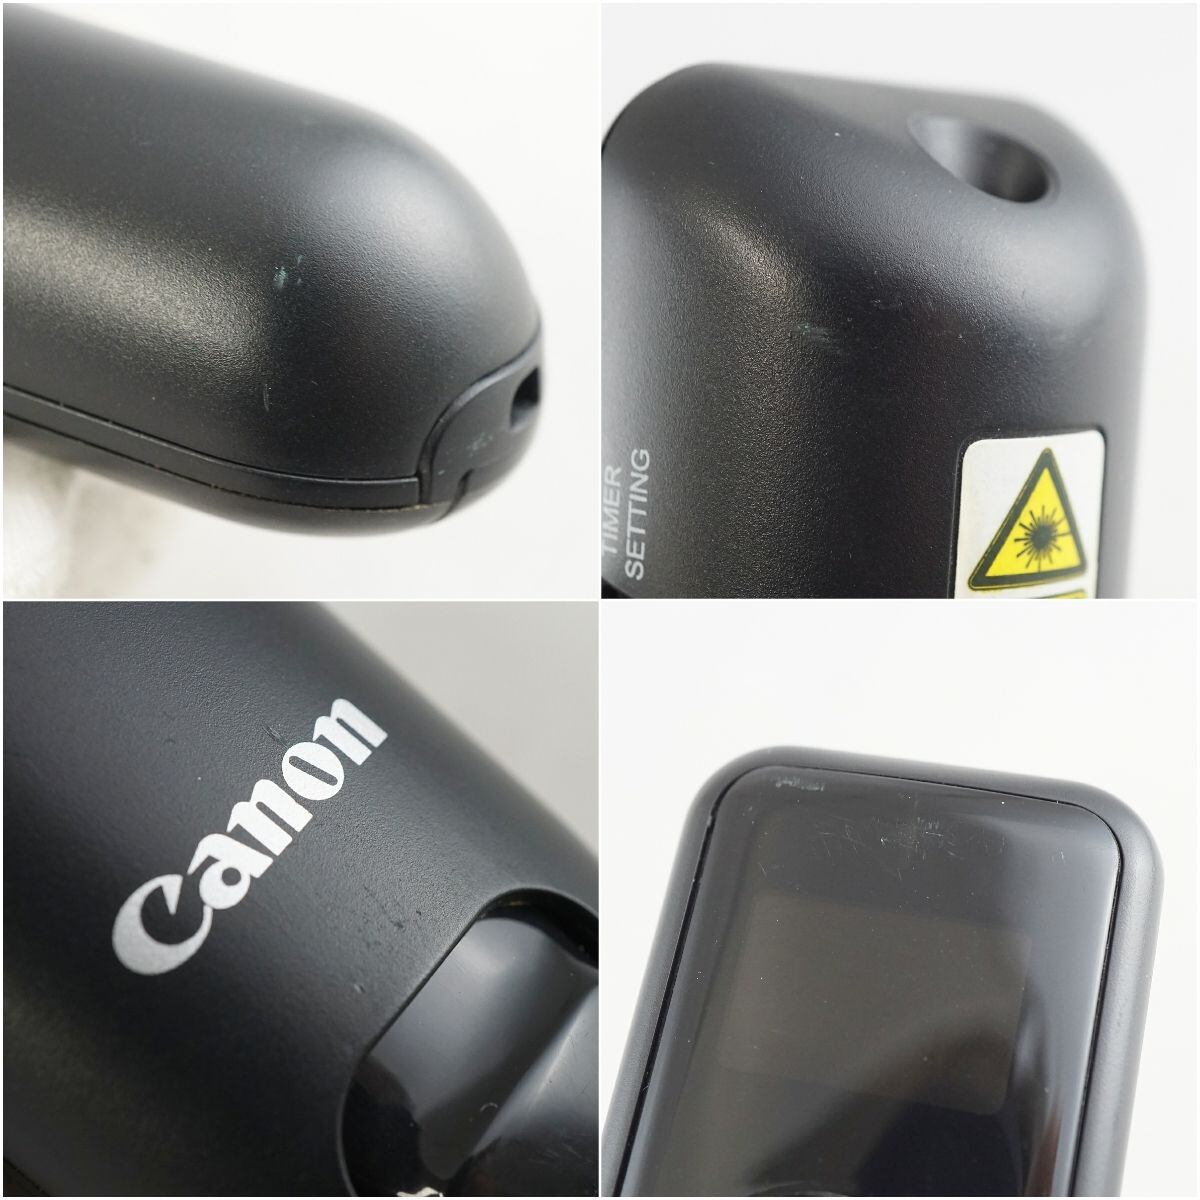 Canon キャノン PR100-RC レーザーポインター USED美品 レッドレーザー タイマー機能 USBレシーバー付 ブラック 完動品 S  X4687 ウィット 鉄道忘れ物 販売 ブランド傘 カメラ イヤホン